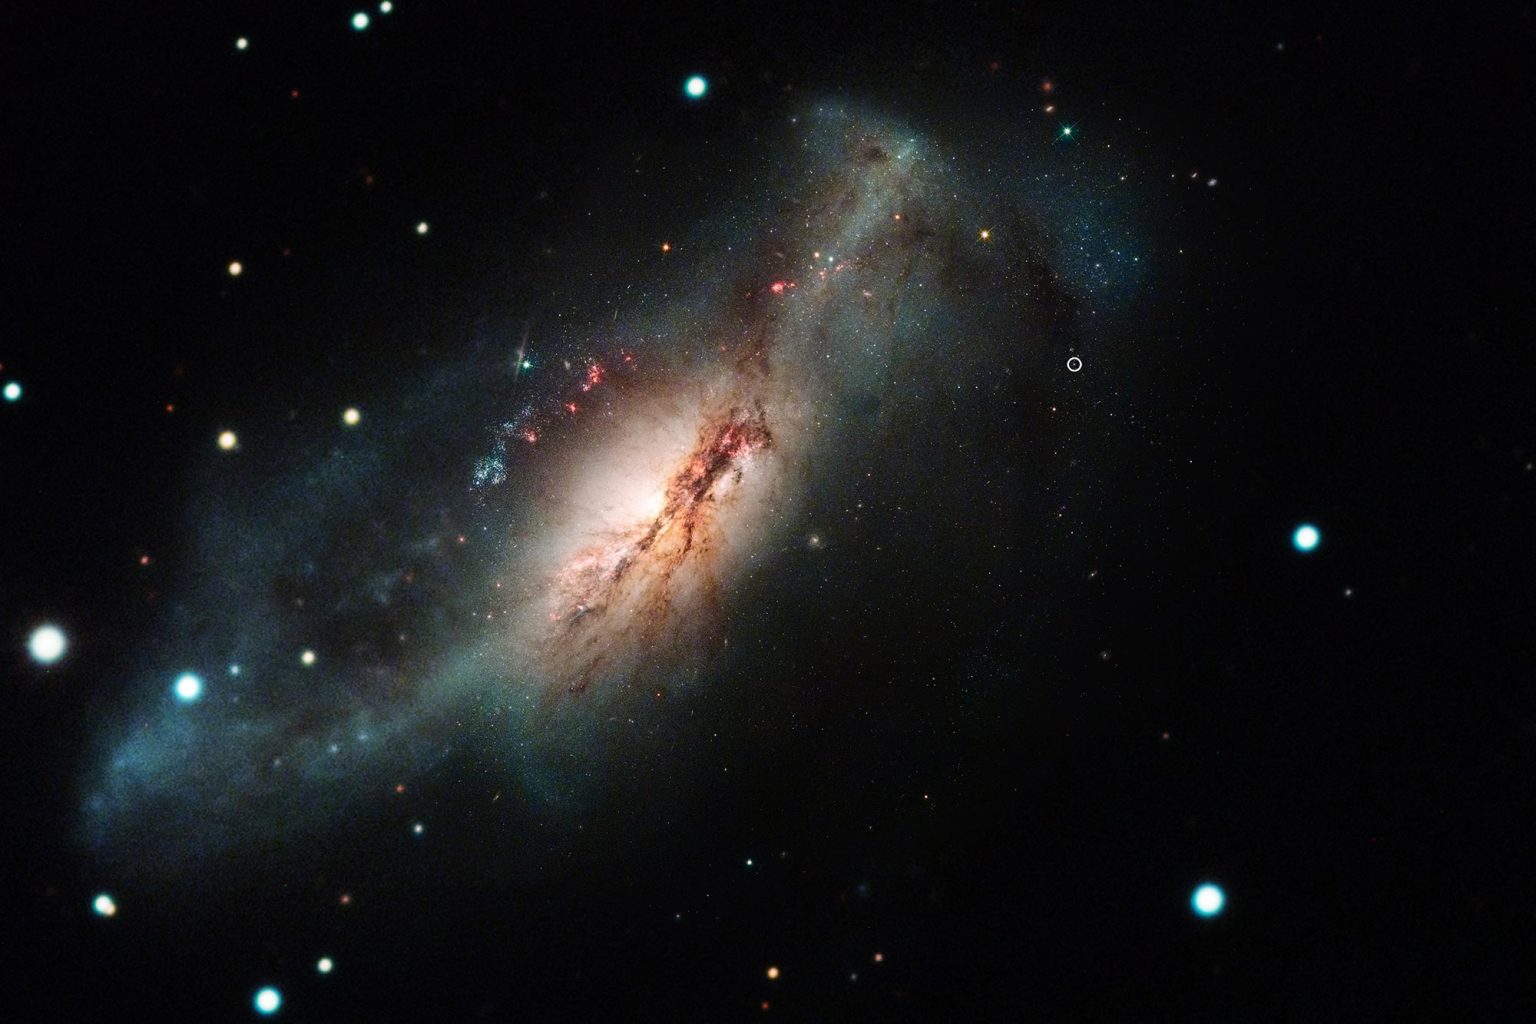 哈勃太空望远镜彩色合成电子捕获超新星 2018zd 和宿主星暴星系 NGC 2146。图片来源：NASA/STScI/J